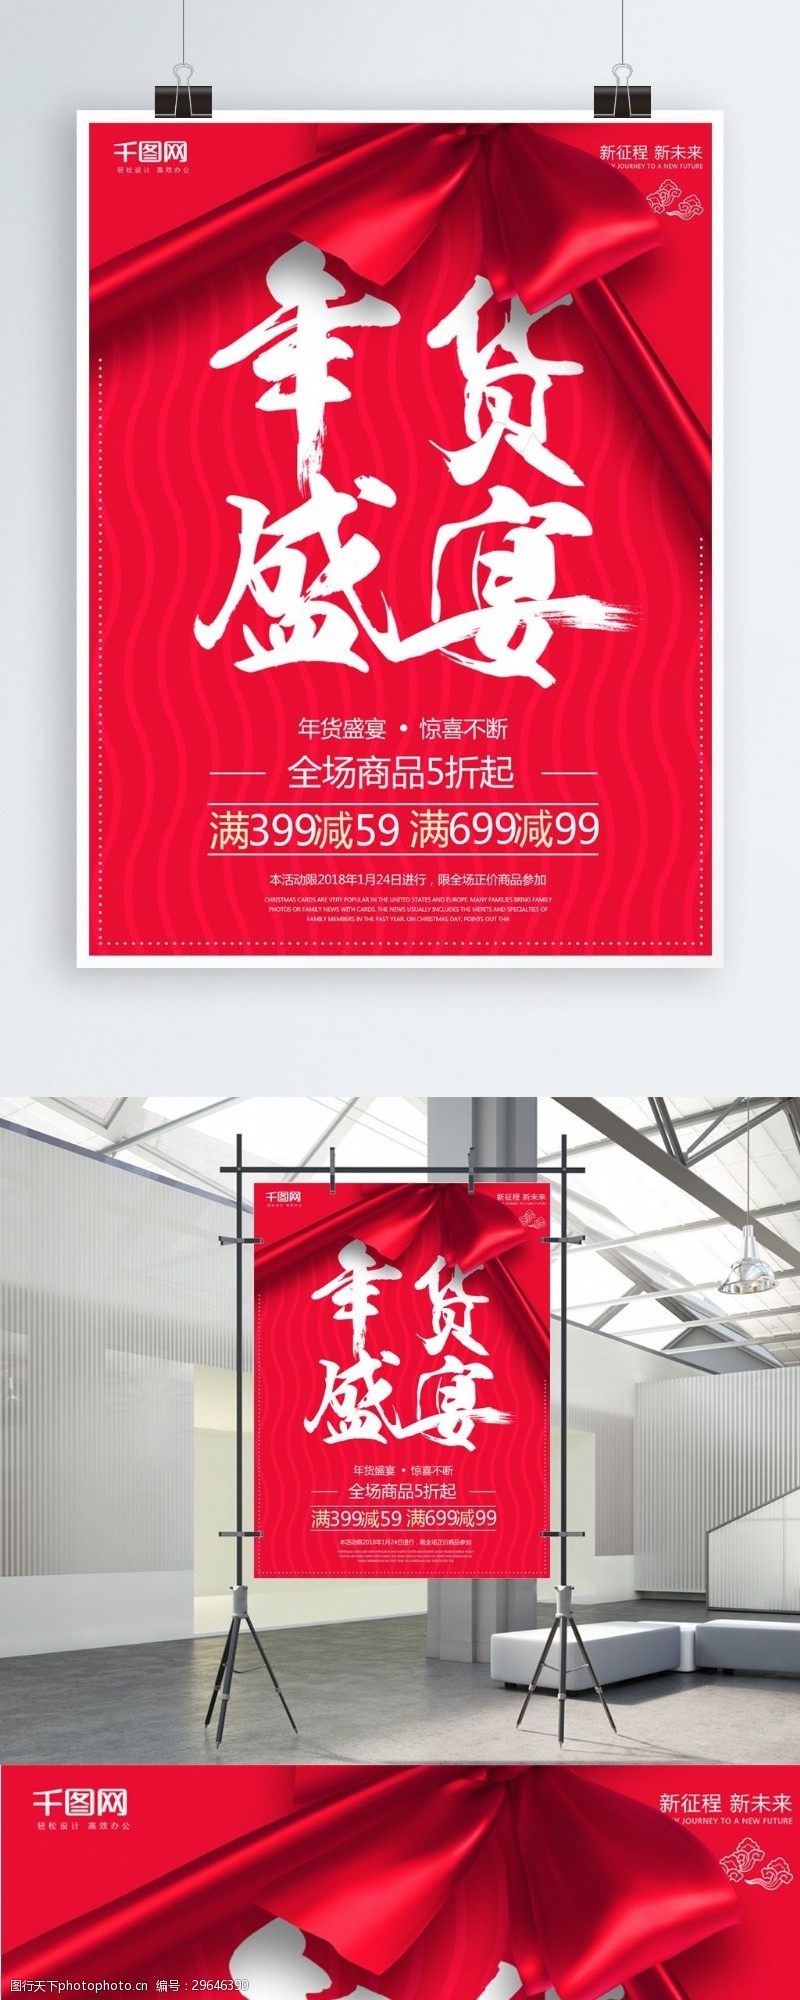 红色喜庆年货盛宴促销海报设计psd模板